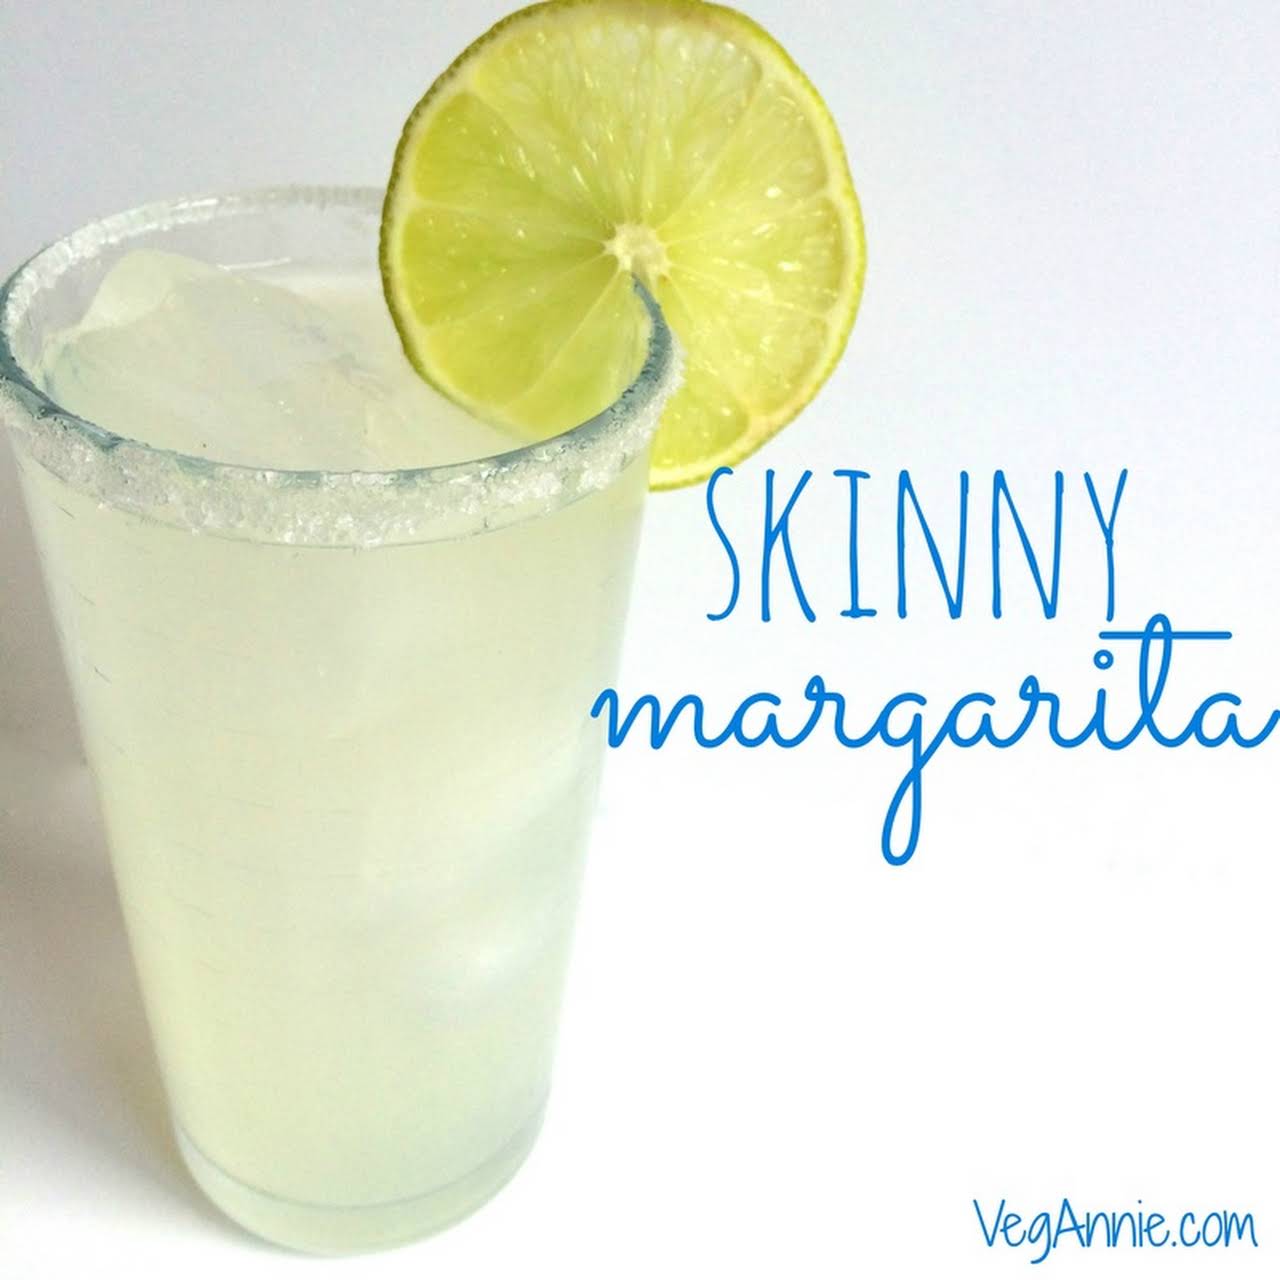 10 Best Club Soda Margarita Recipes | Yummly